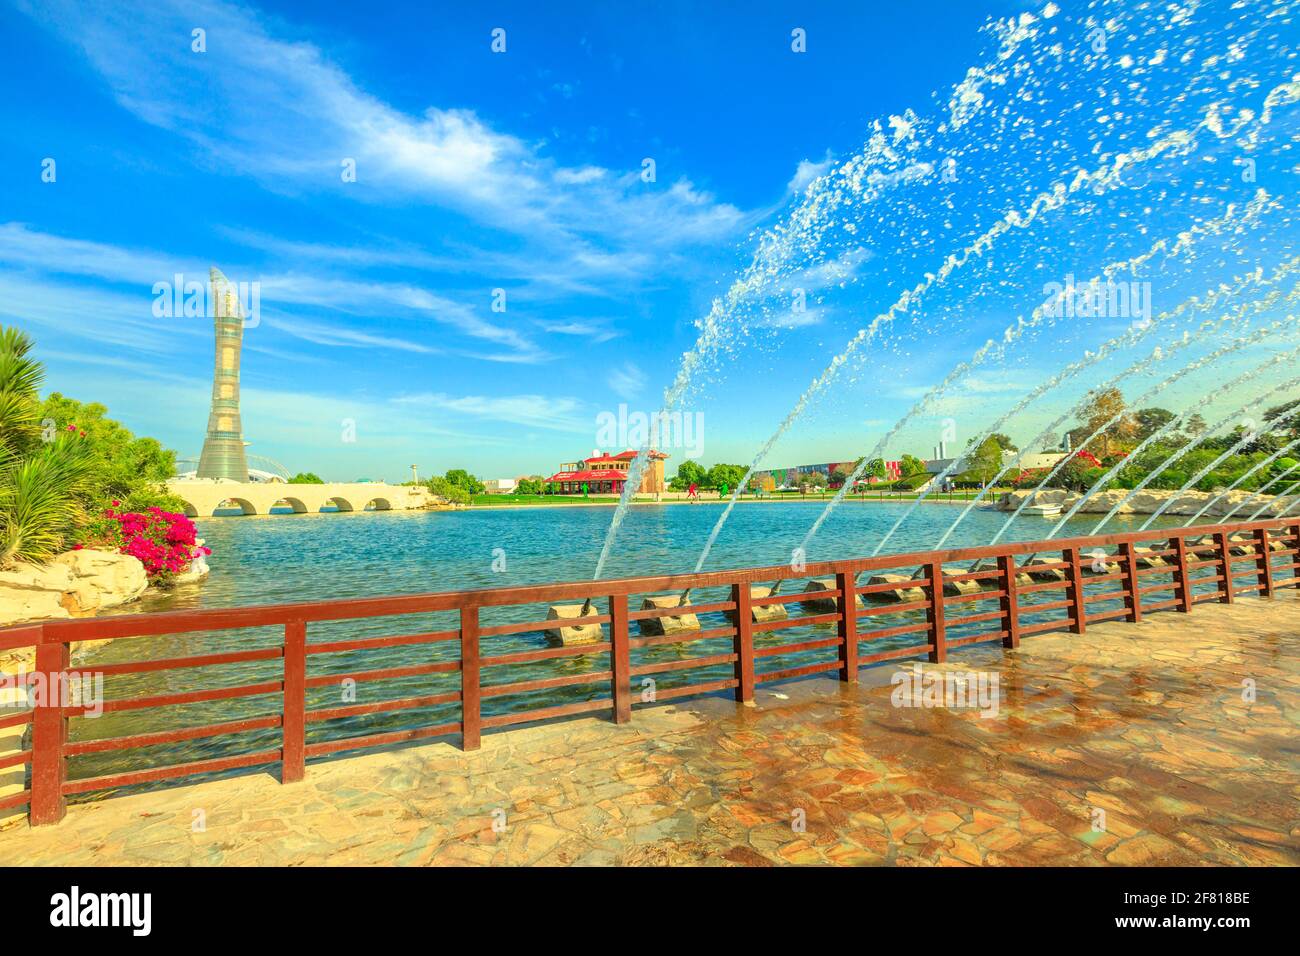 Doha, Qatar - 21 febbraio 2019: Aspire Tower hotel e ponte con fontana nel parco Aspire, il più grande di Doha, situato nella Aspire zone, Doha Sports Foto Stock